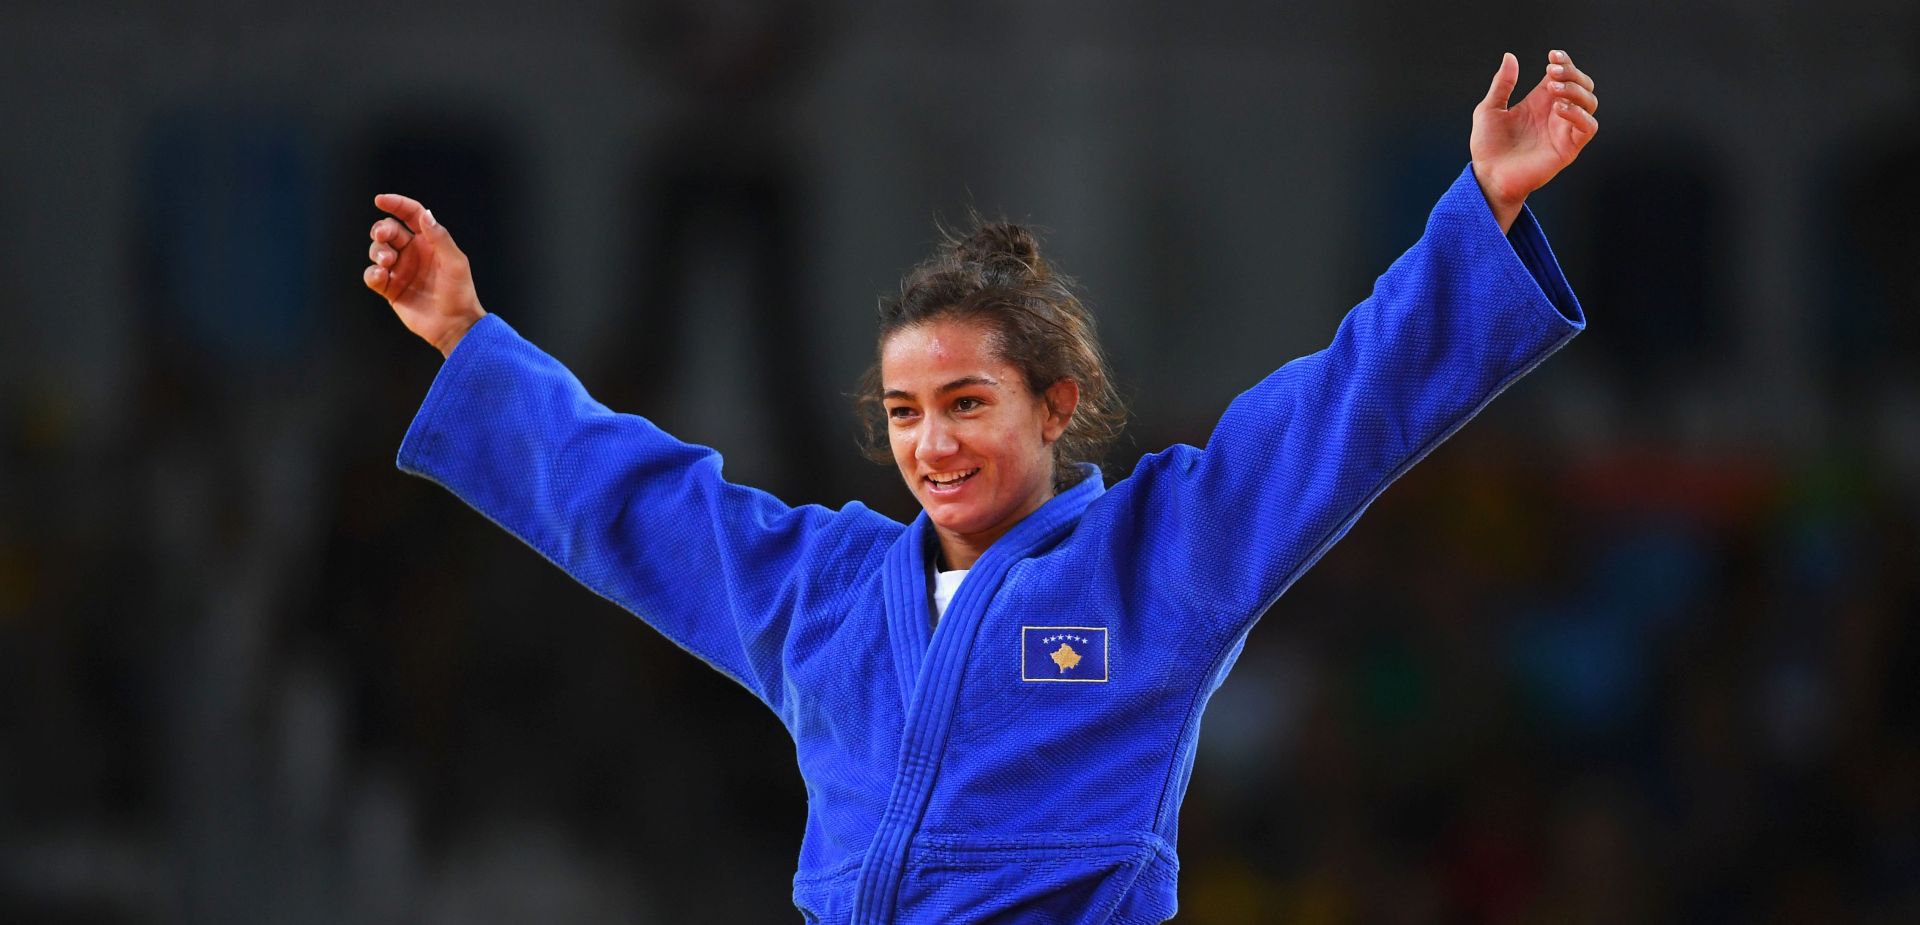 OI JUDO Majlinda Kelmendi osvojila prvo zlato za Kosovo!